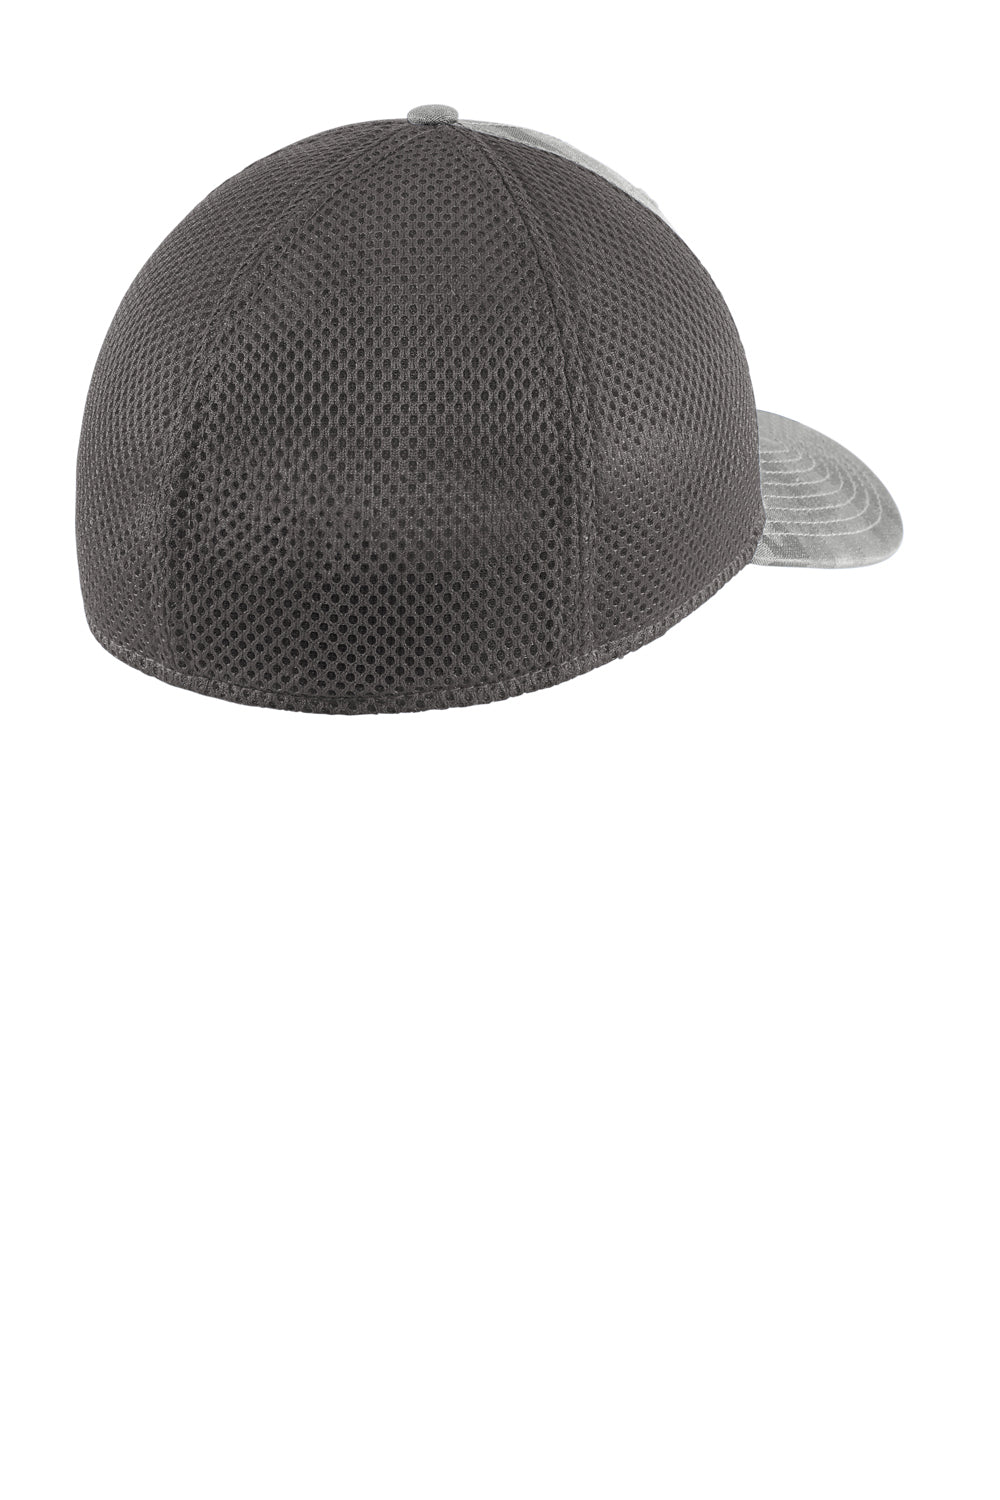 New Era NE1091 Tonal Camo Tech Mesh Stretch Fit Hat Rainstorm Grey Camo/Graphite Grey Side